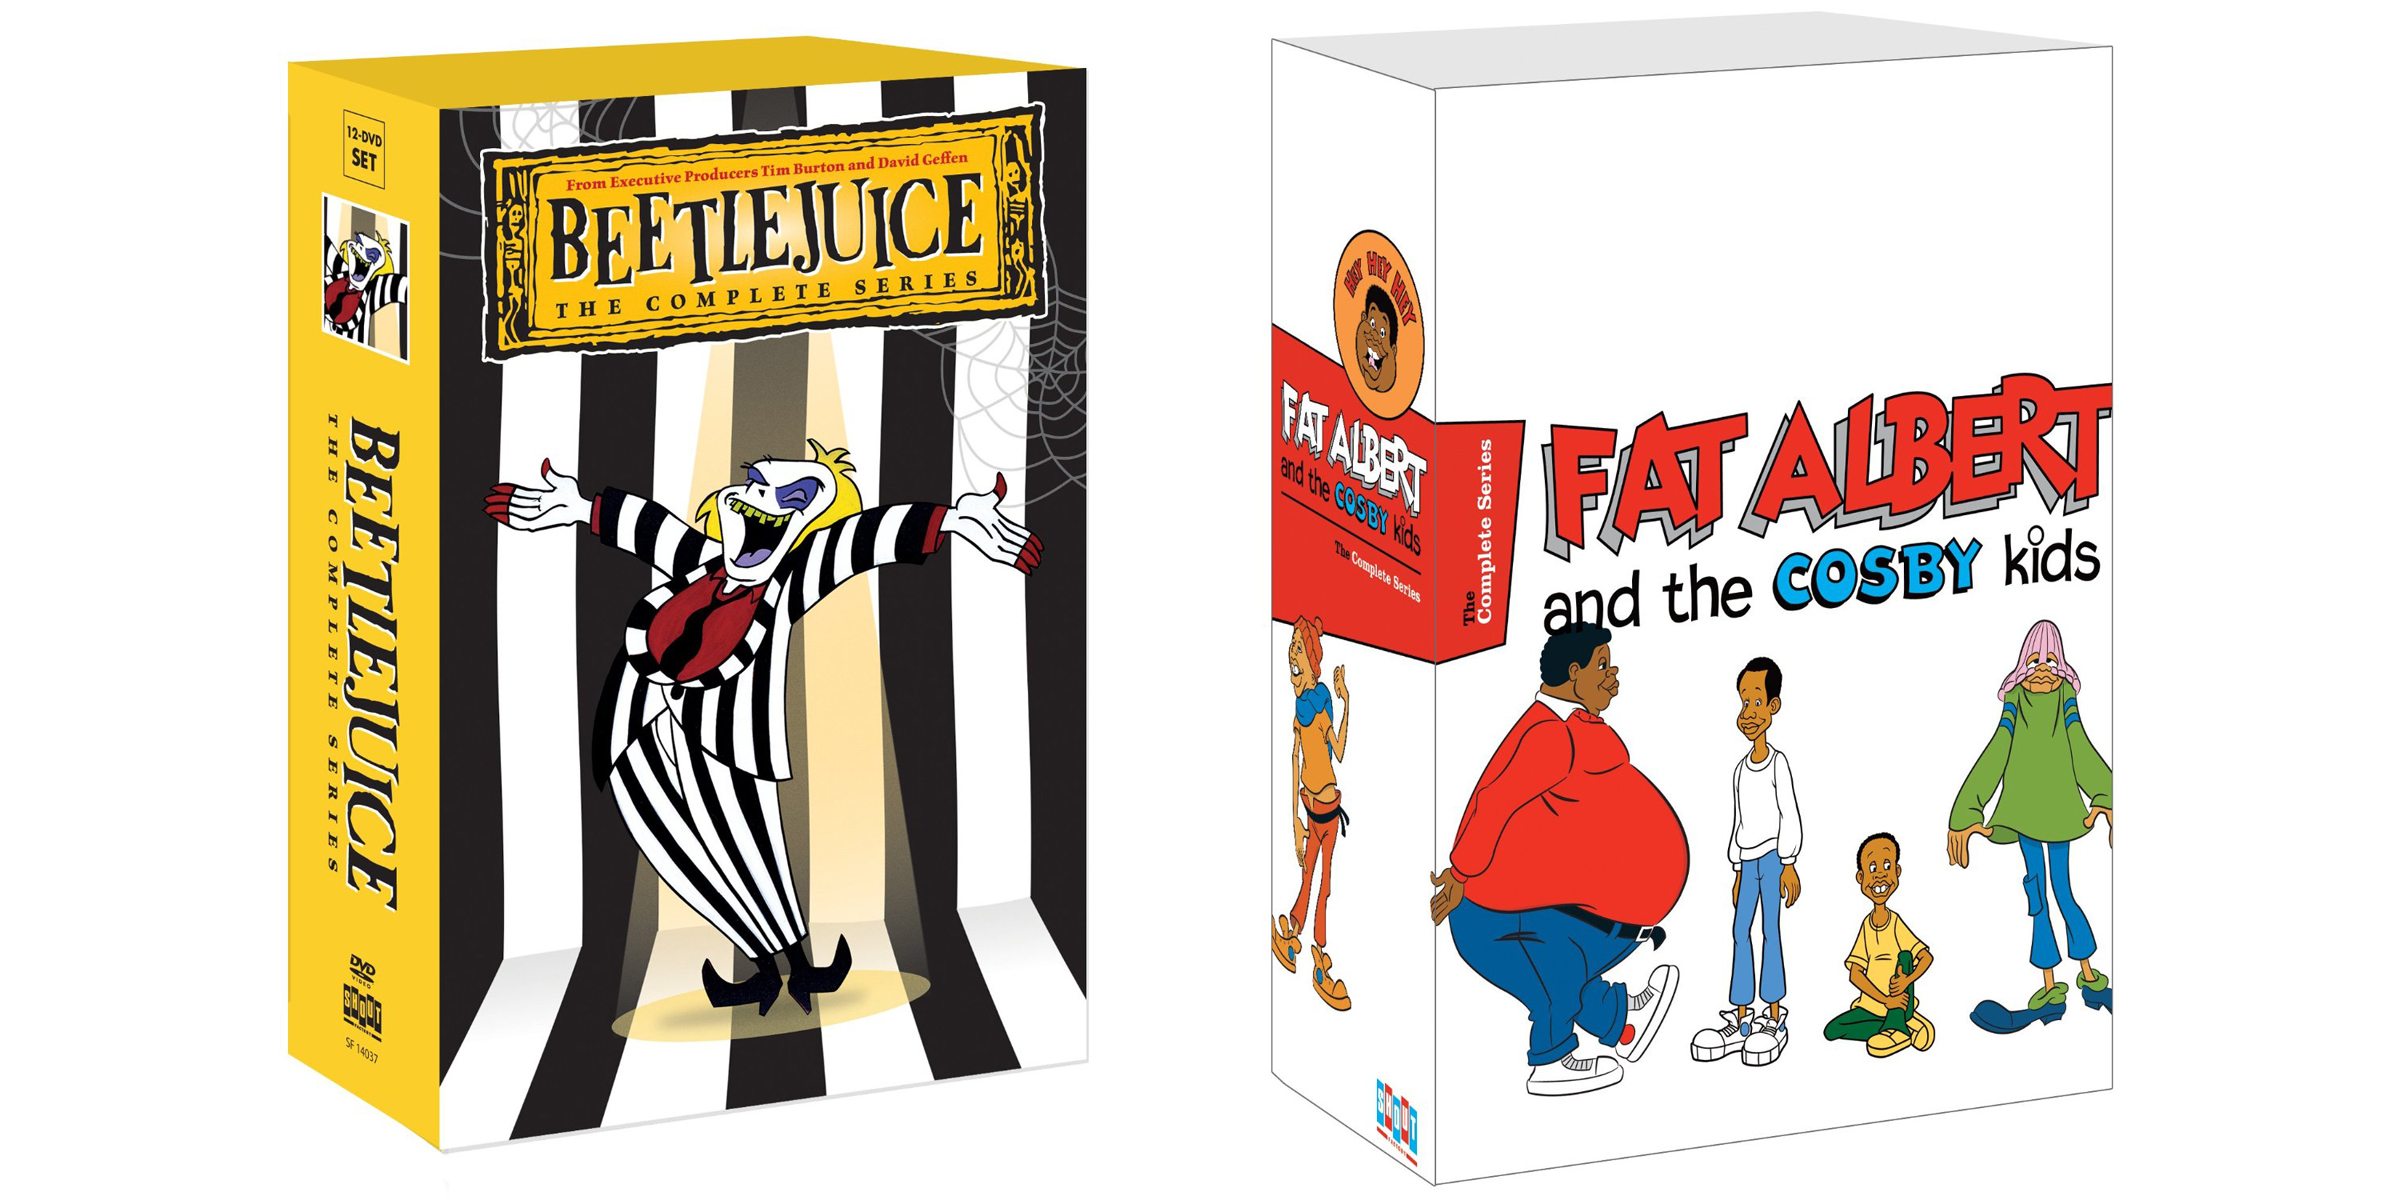 Beetlejuice Cartoon Dvd Review